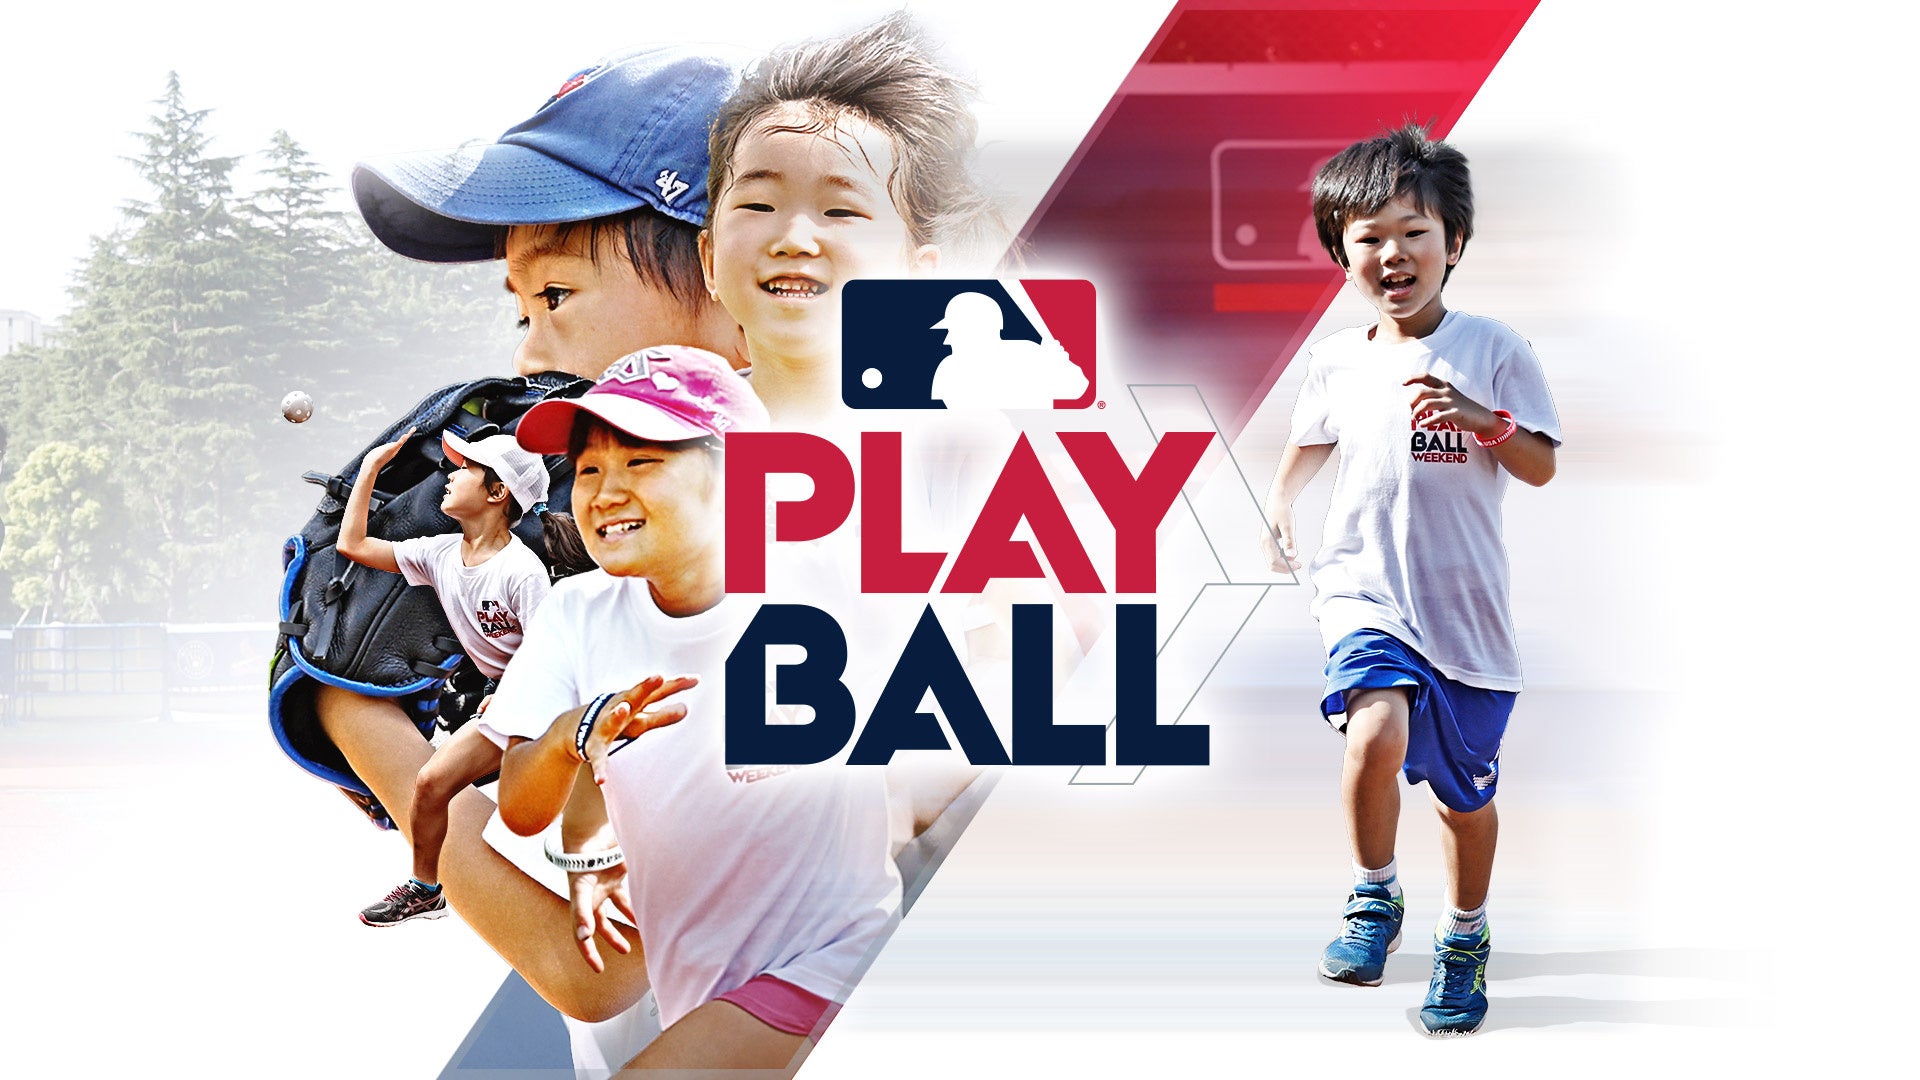 メジャーリーグベースボール、子どもたちが、”はじめての野球”を楽しむ ...